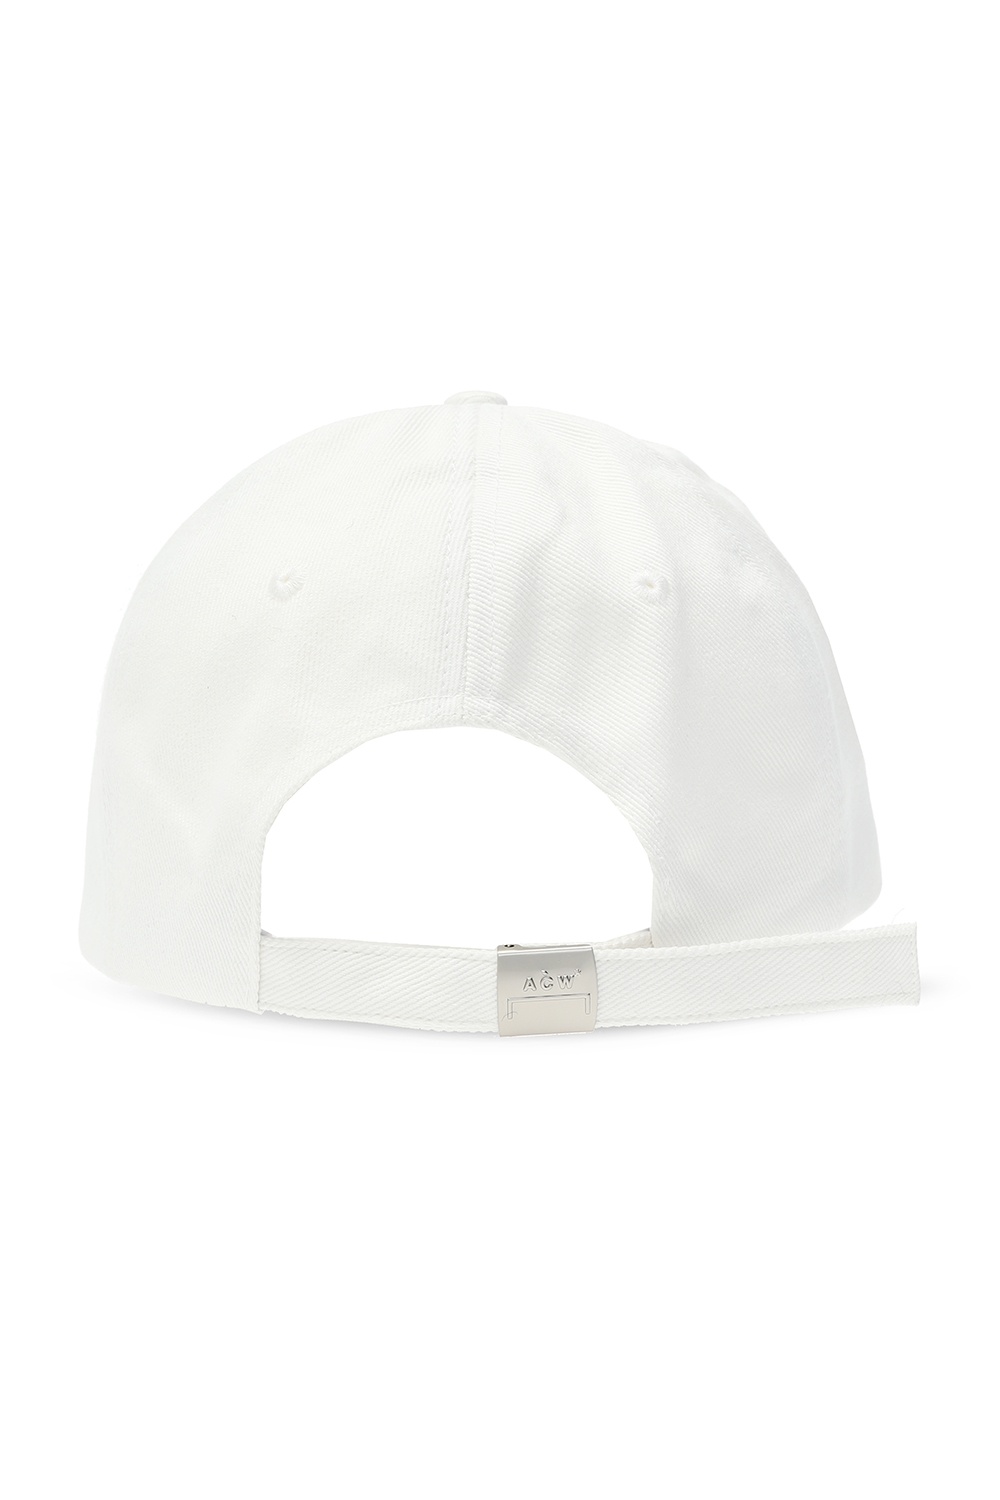 A-COLD-WALL* Givenchy Kids 4G motif baseball cap